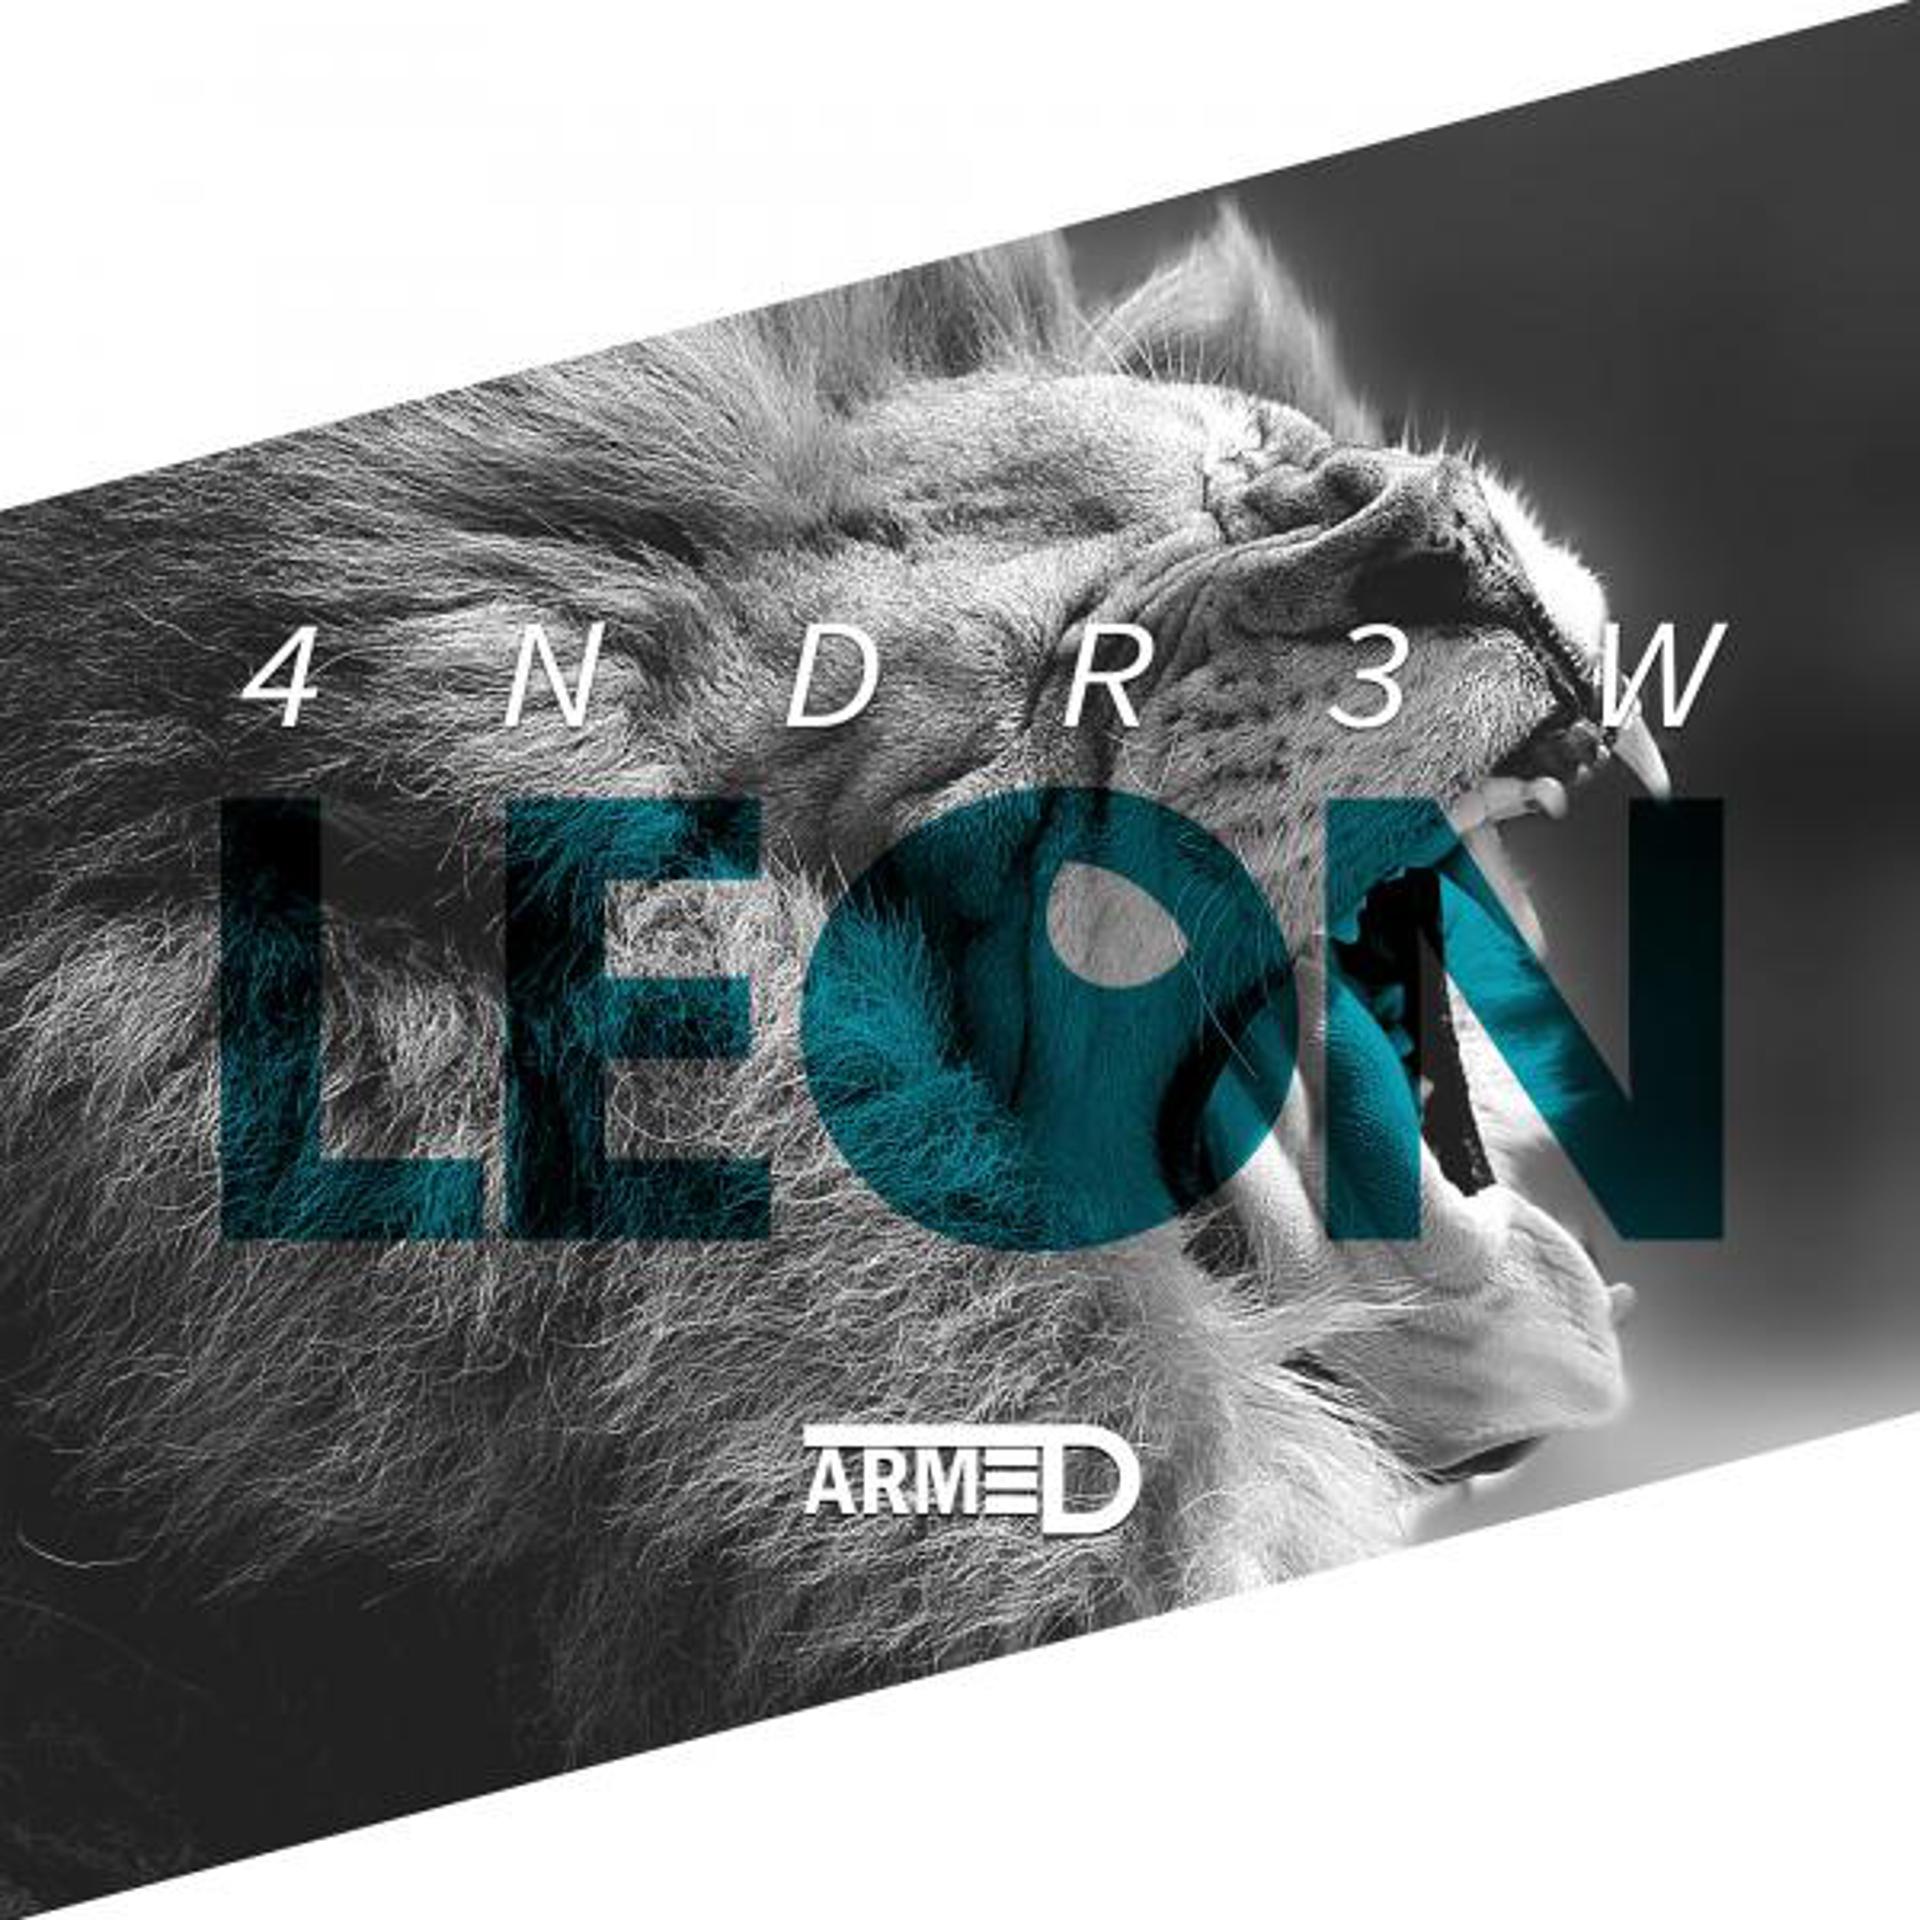 Постер альбома Leon